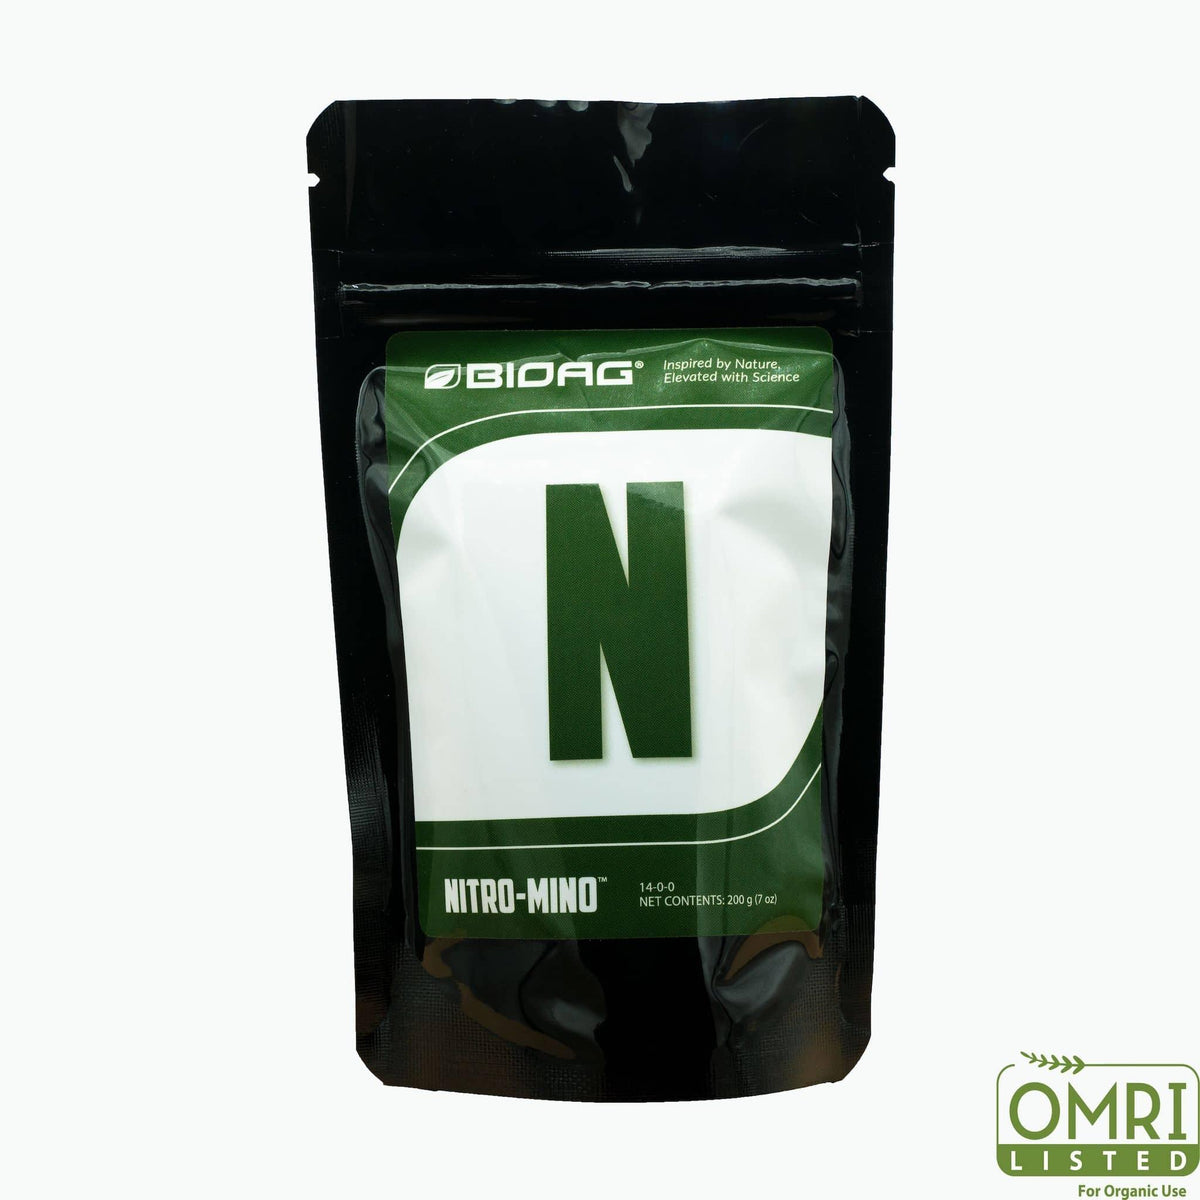 Aminoácidos Nitro-Mino® de BioAg de Hidrólisis Enzimática de Soya No Transgénica - Mountainside Orgánicos